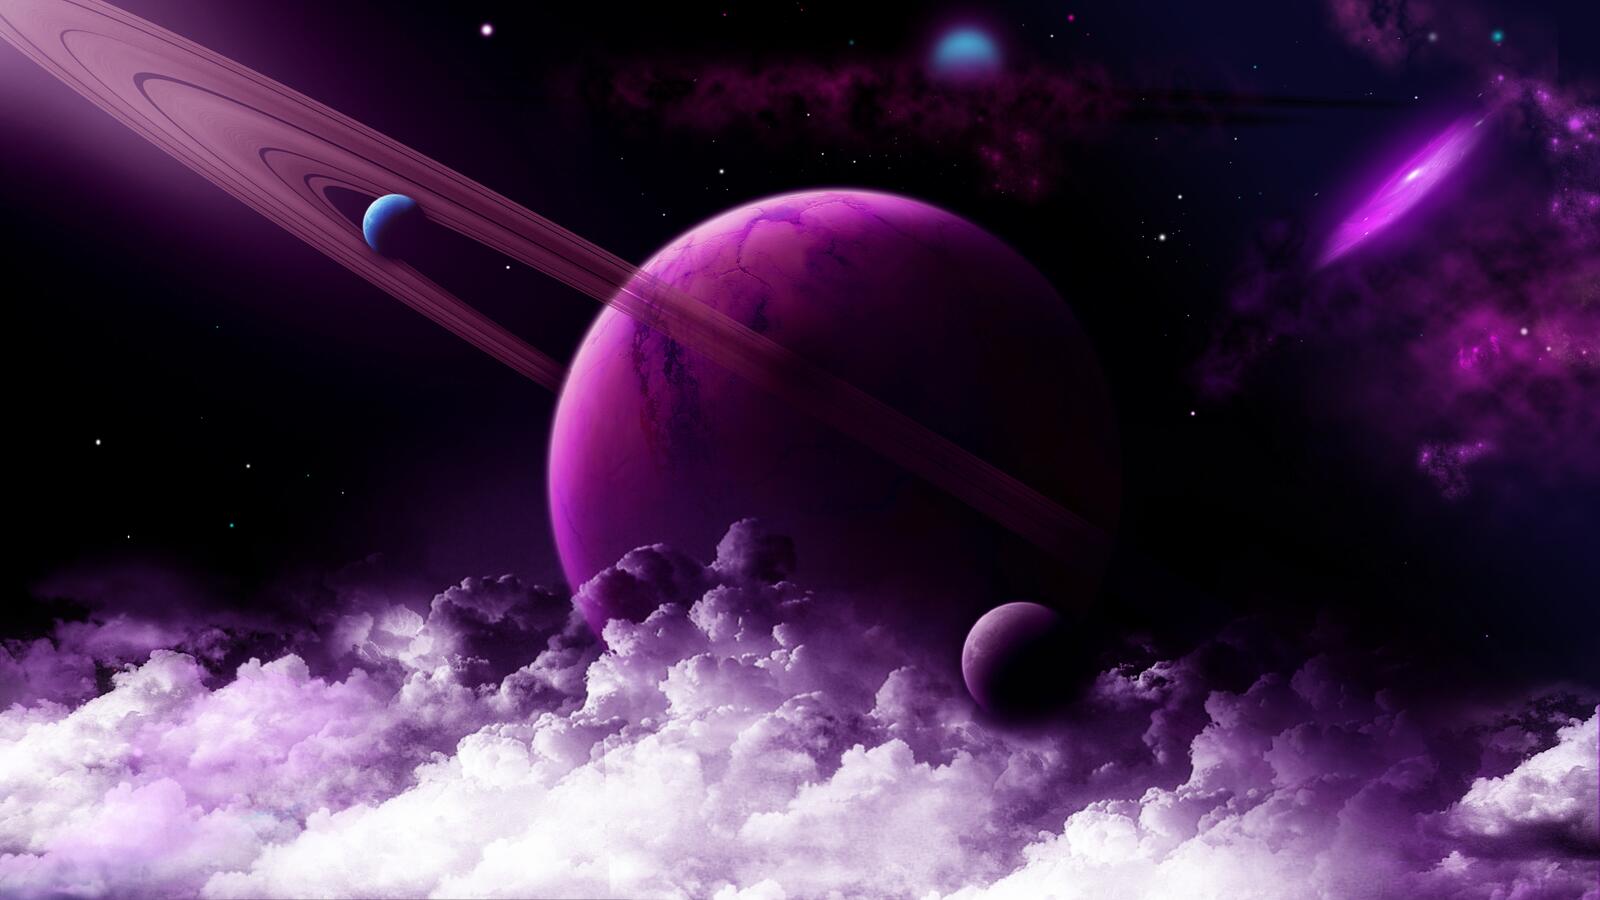 Бесплатное фото Фантастическая кольцевая система Сатурна